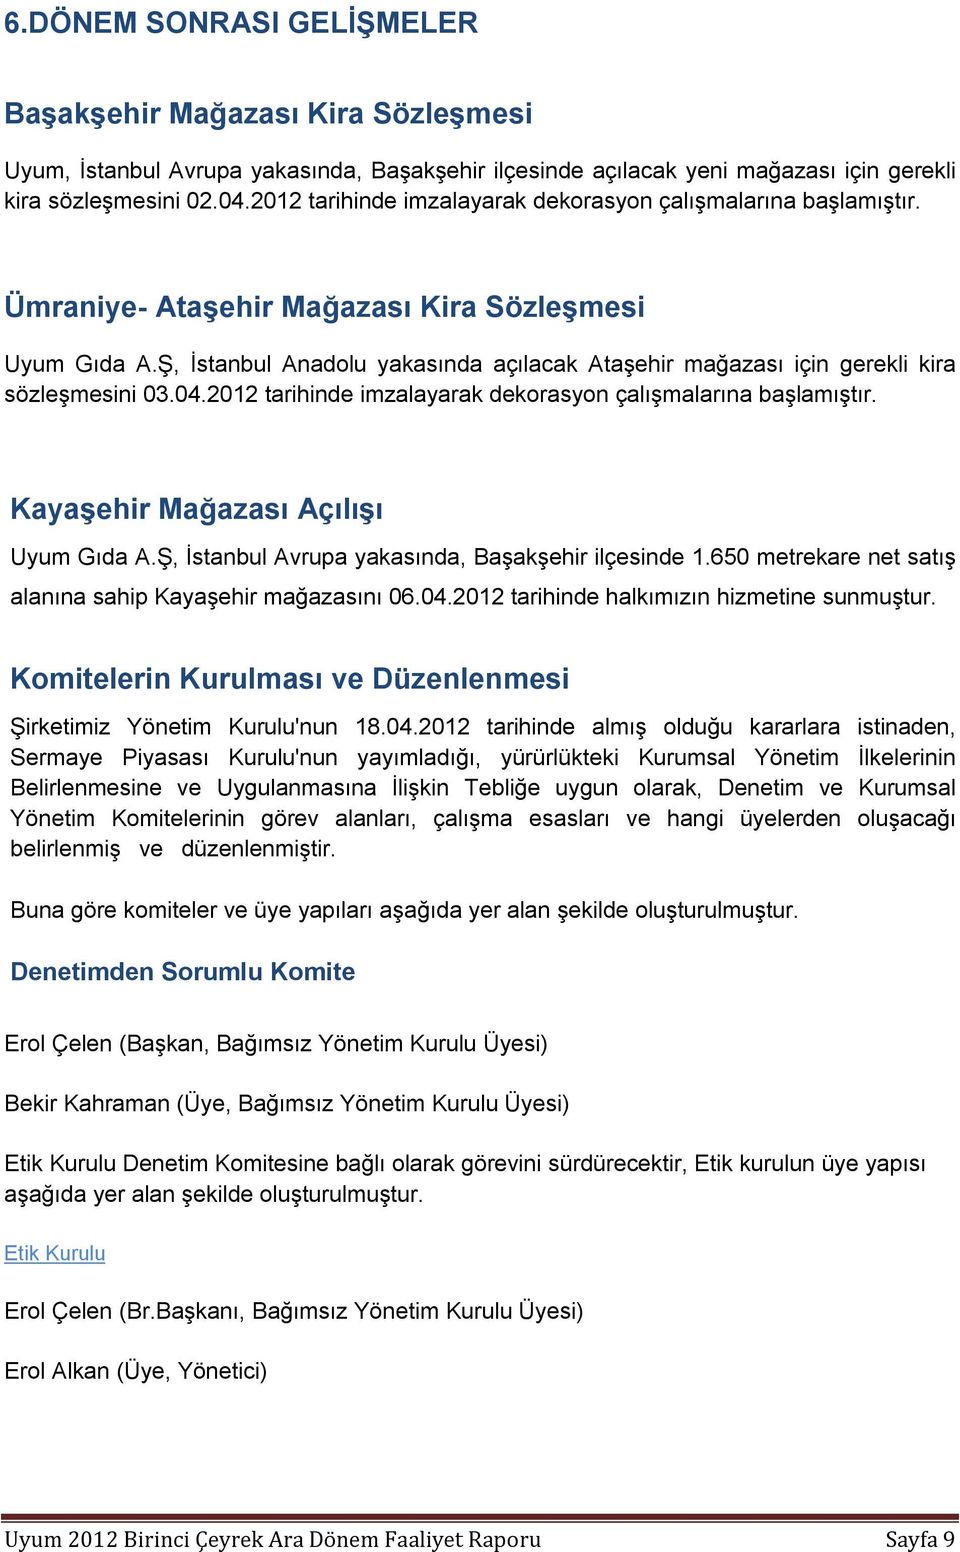 Ş, İstanbul Anadolu yakasında açılacak Ataşehir mağazası için gerekli kira sözleşmesini 03.04.2012 tarihinde imzalayarak dekorasyon çalışmalarına başlamıştır. Kayaşehir Mağazası Açılışı Uyum Gıda A.